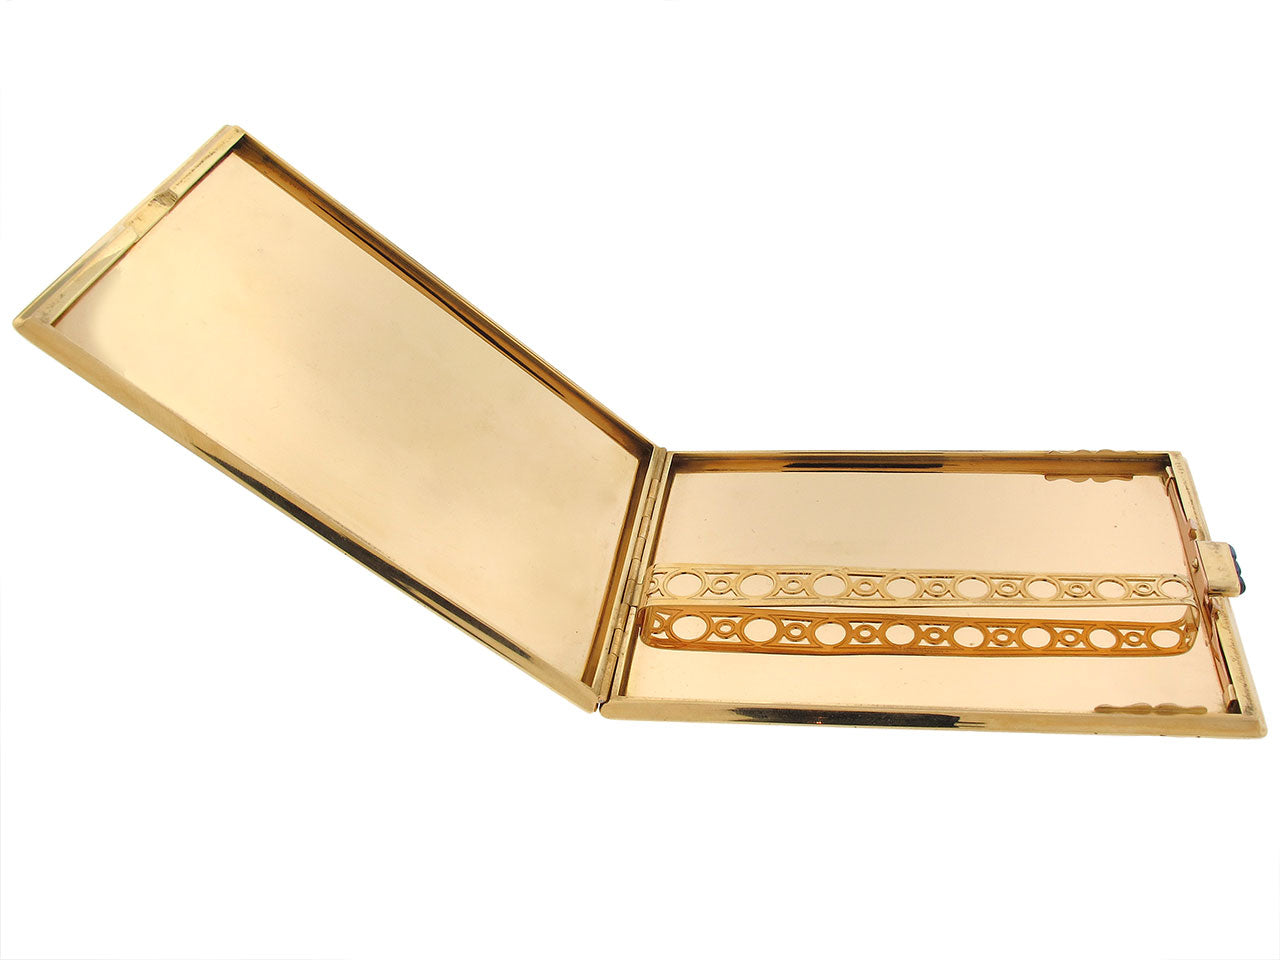 Cartier Paris Retro Cigarette Box in 18K Gold